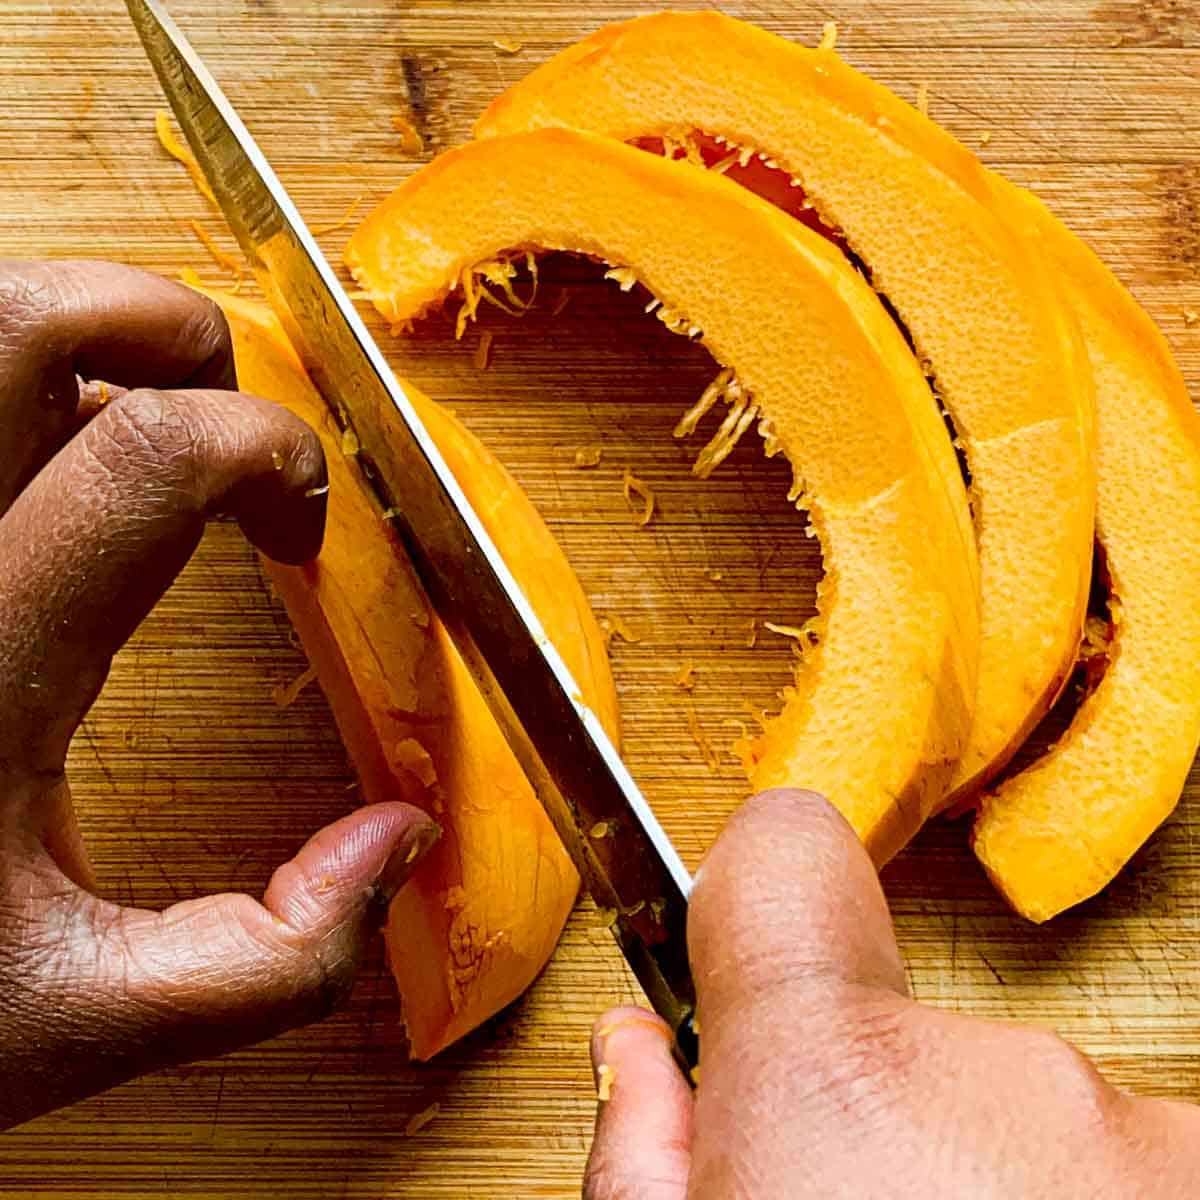 Pumpkin slices being cut